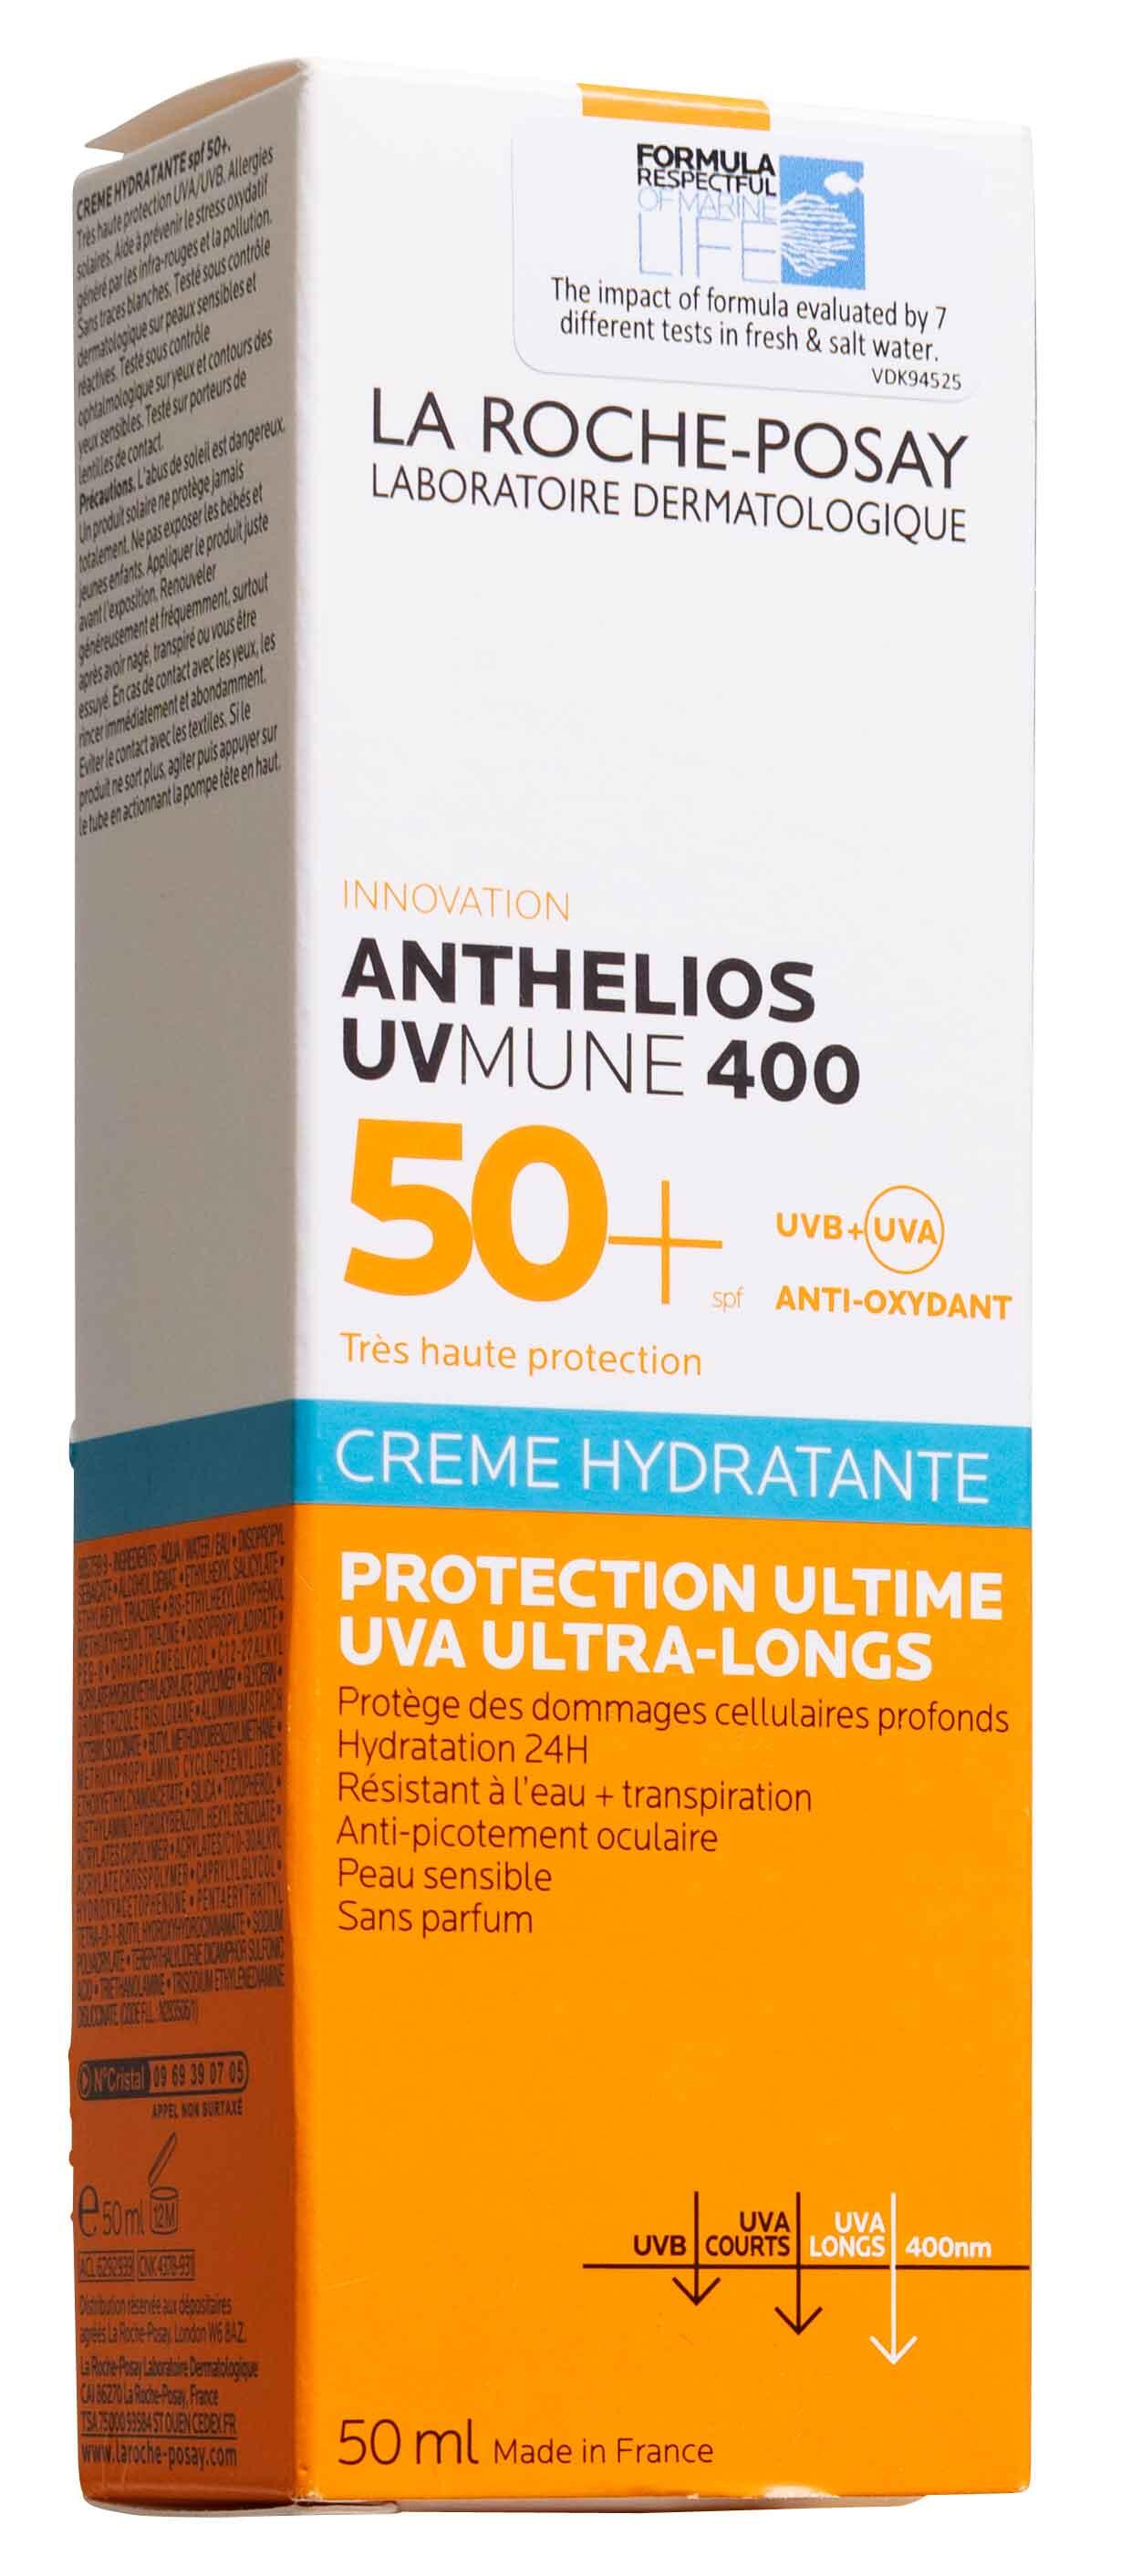 UVmune 400 SPF 50+ La Roche-Posay Anthelios